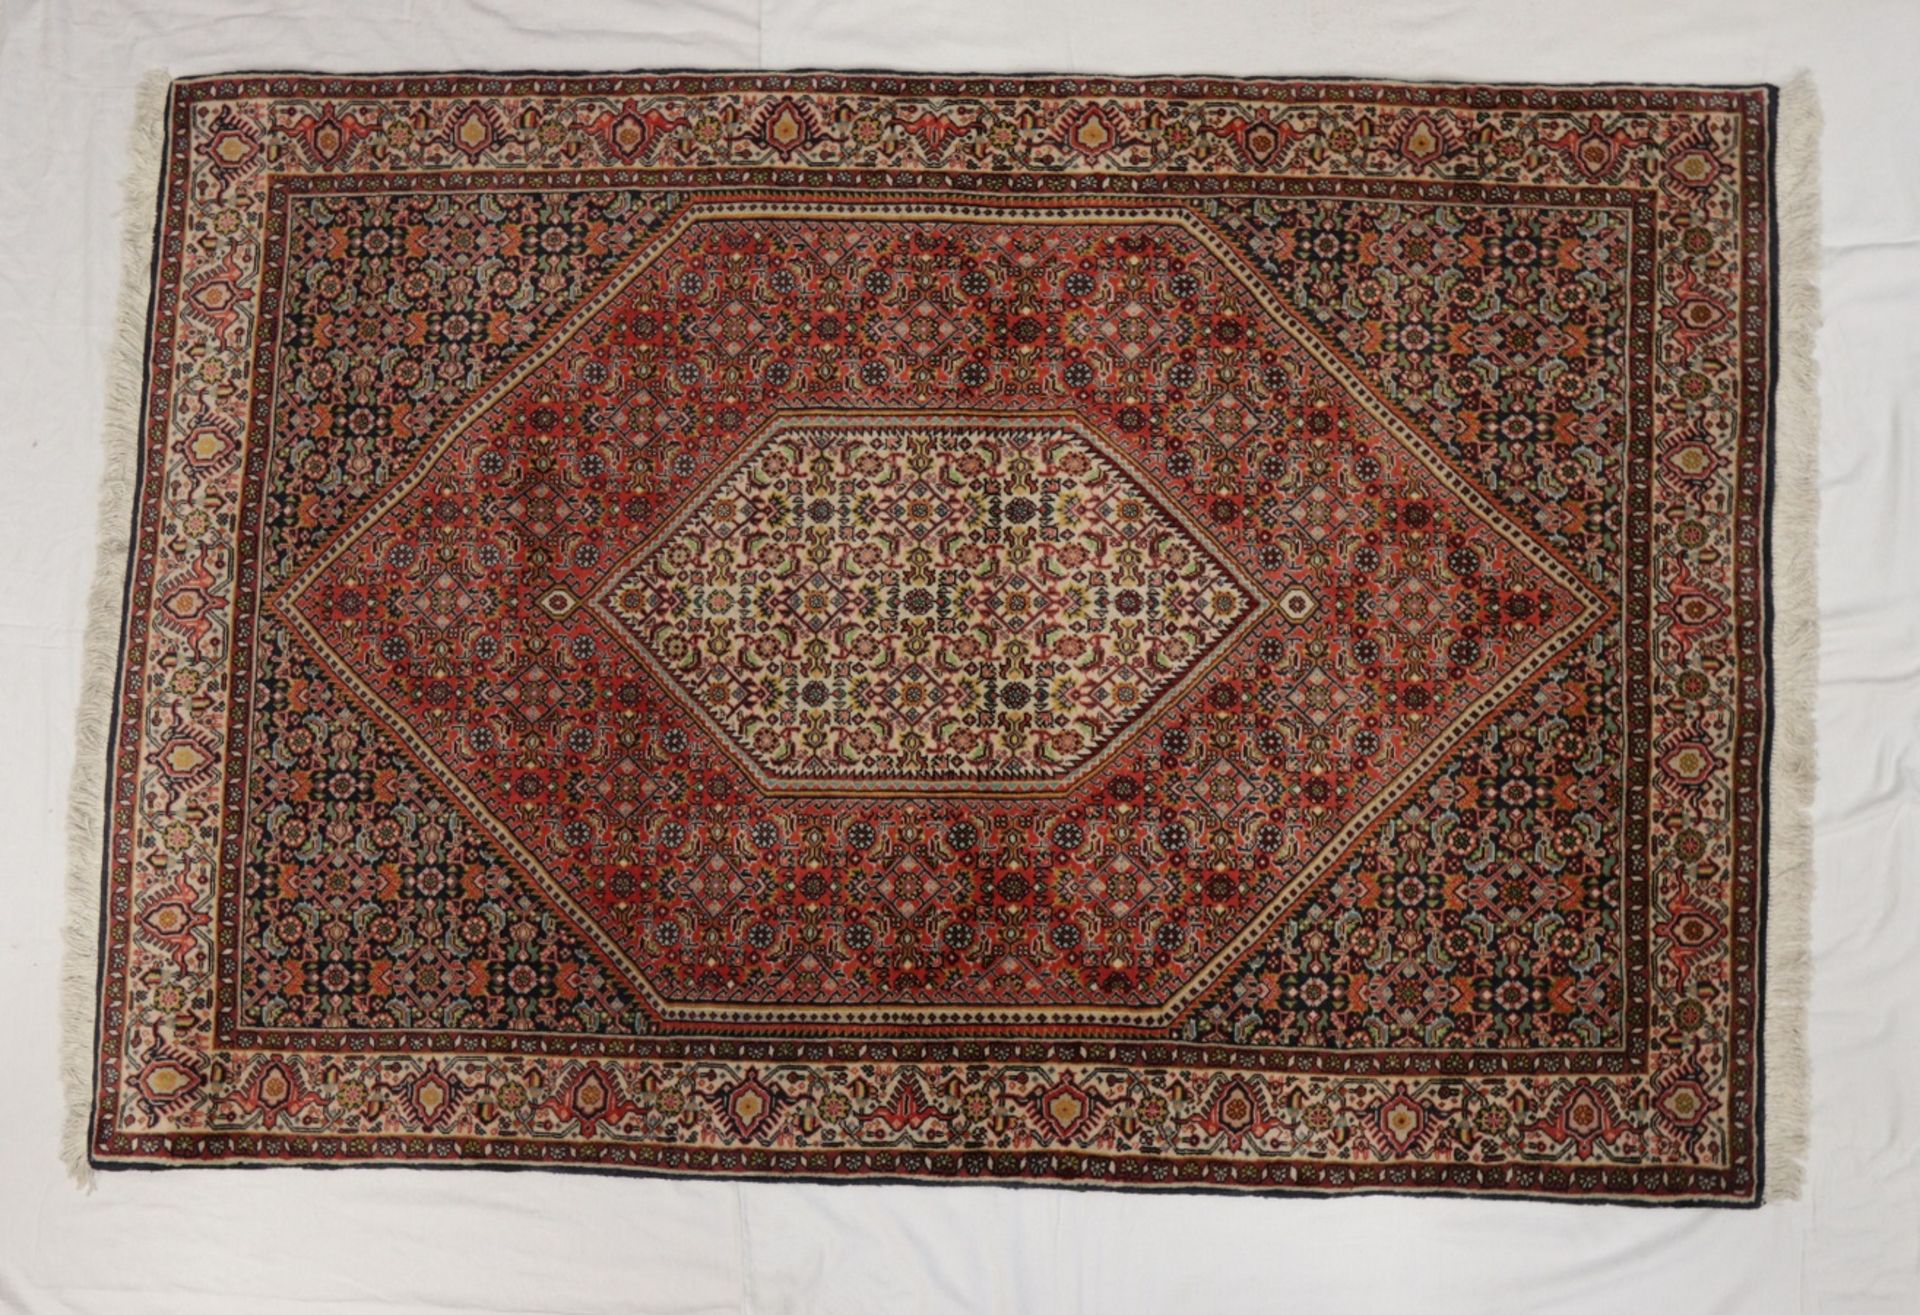 Schöner Orient Teppich 1,65 x 1,15m - Bild 3 aus 4